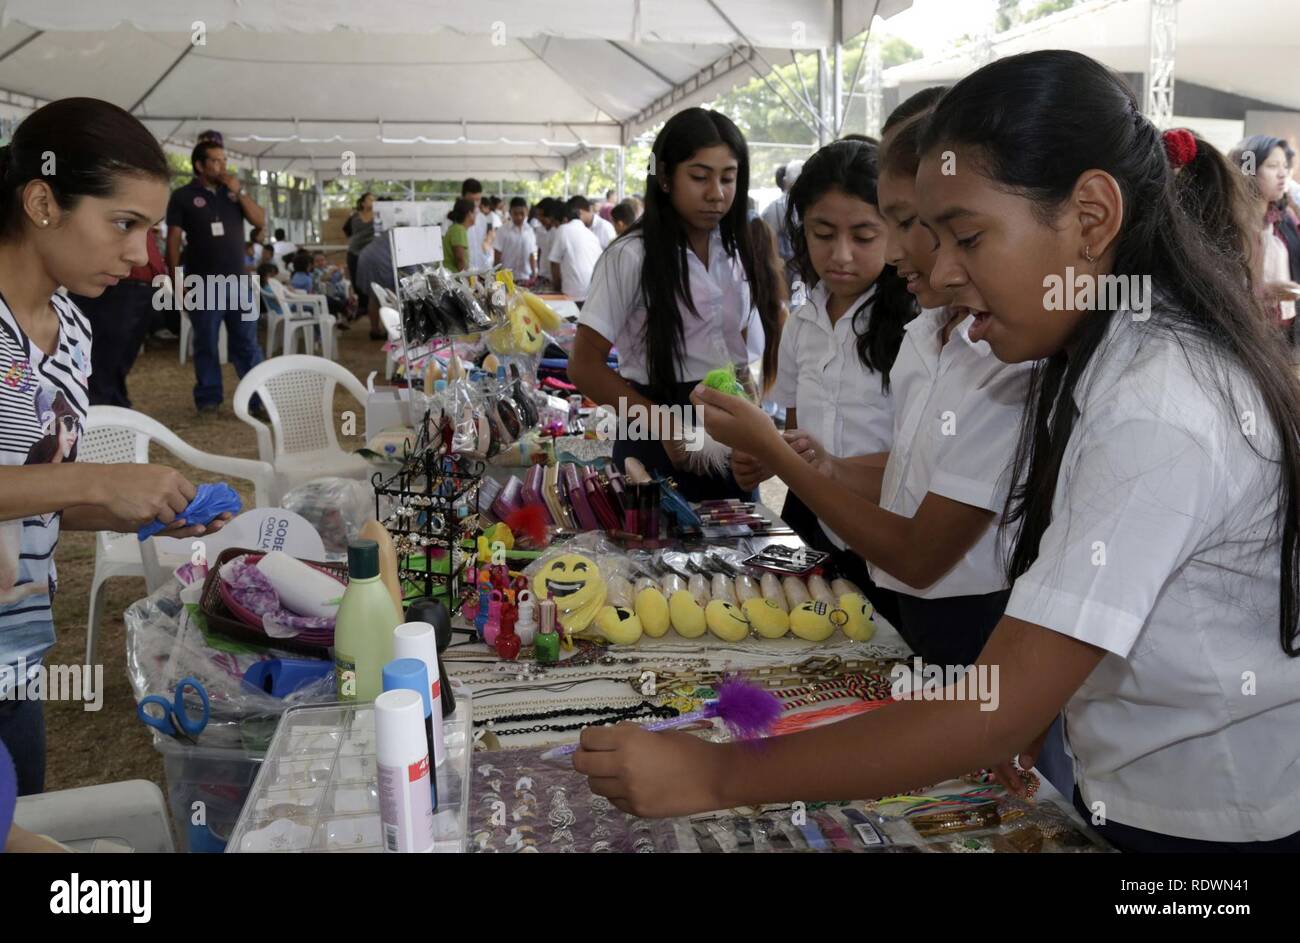 Apertura de sede programa de empleo Jóvenes con todo, Soyapango (25553865473). Stock Photo